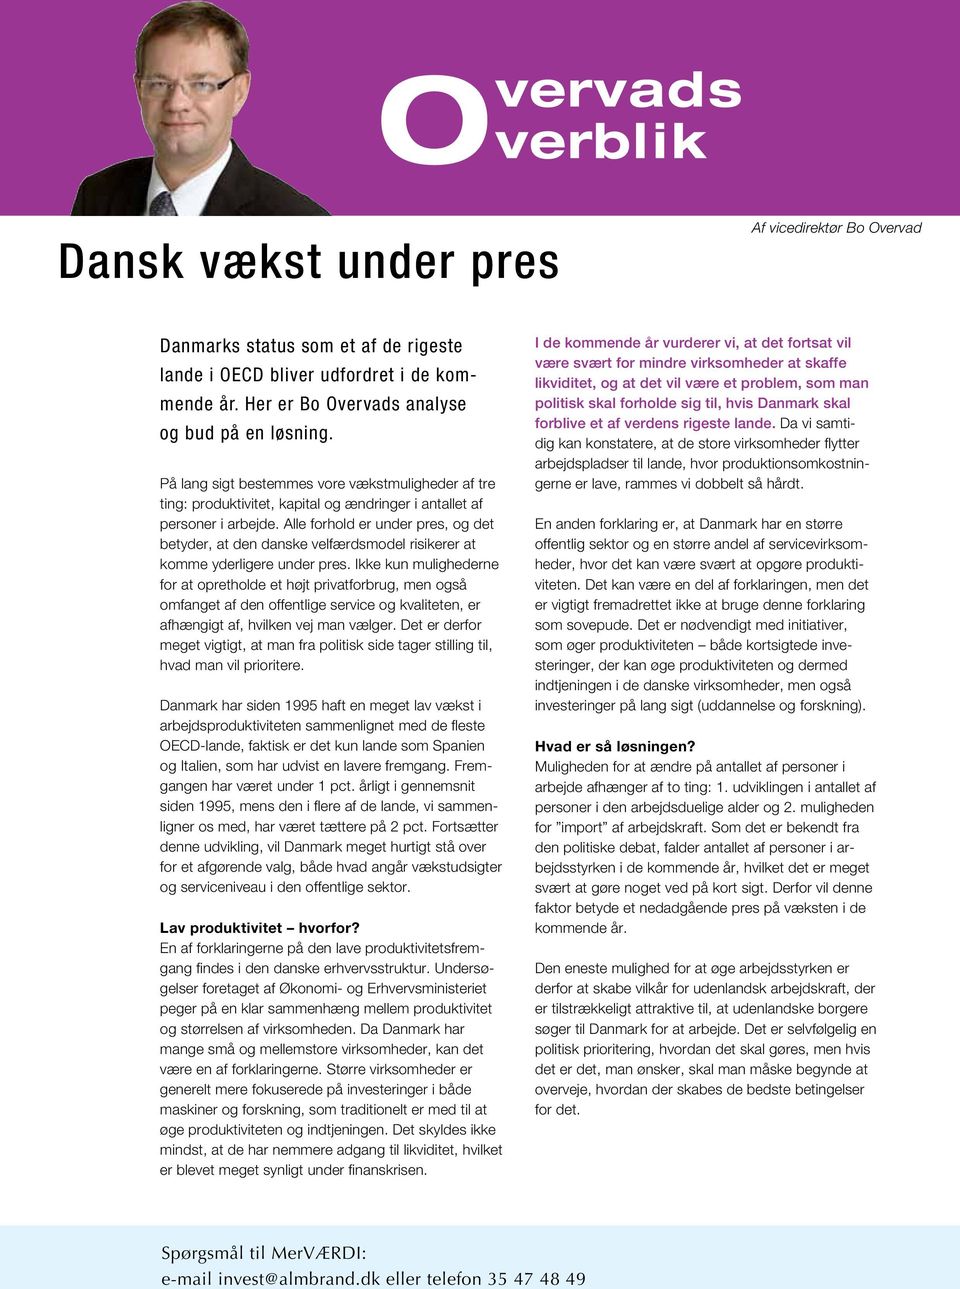 Alle forhold er under pres, og det betyder, at den danske velfærdsmodel risikerer at komme yderligere under pres.